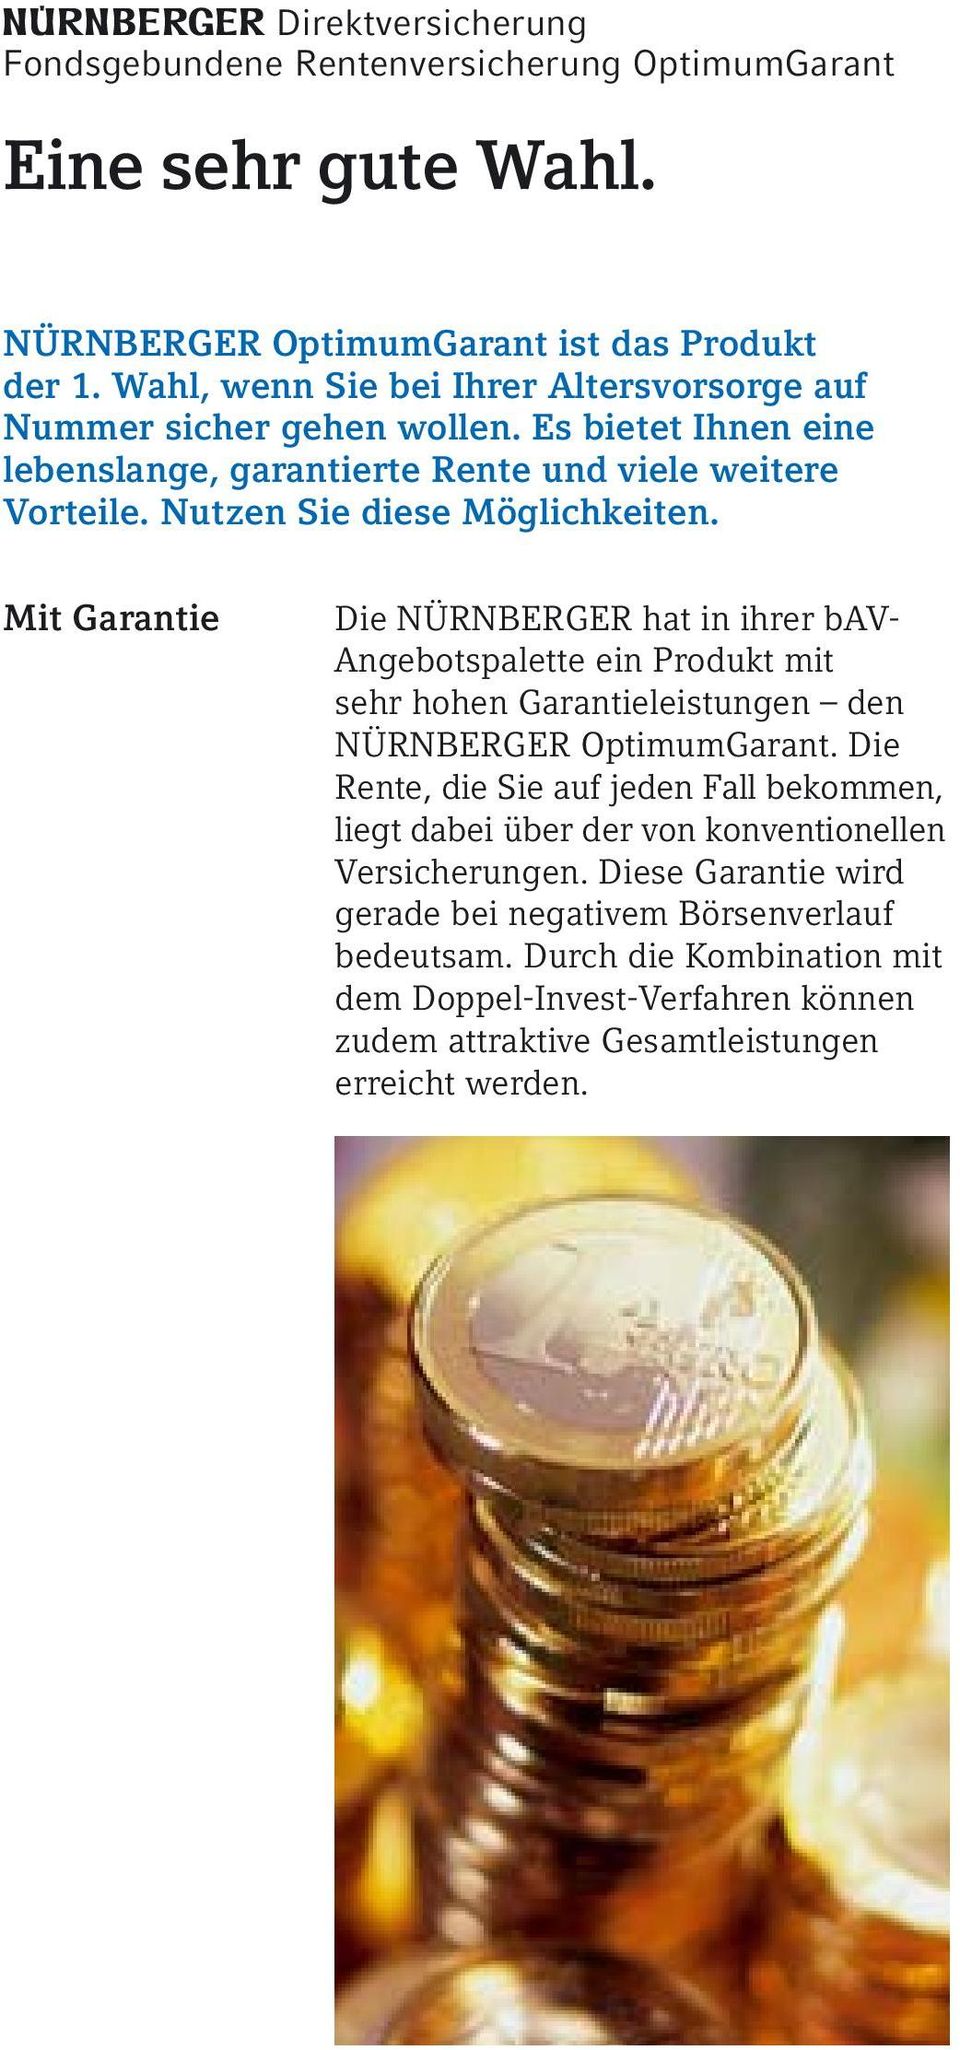 Mit Garantie Die NÜRNBERGER hat in ihrer bav- Angebotspalette ein Produkt mit sehr hohen Garantieleistungen den NÜRNBERGER OptimumGarant.